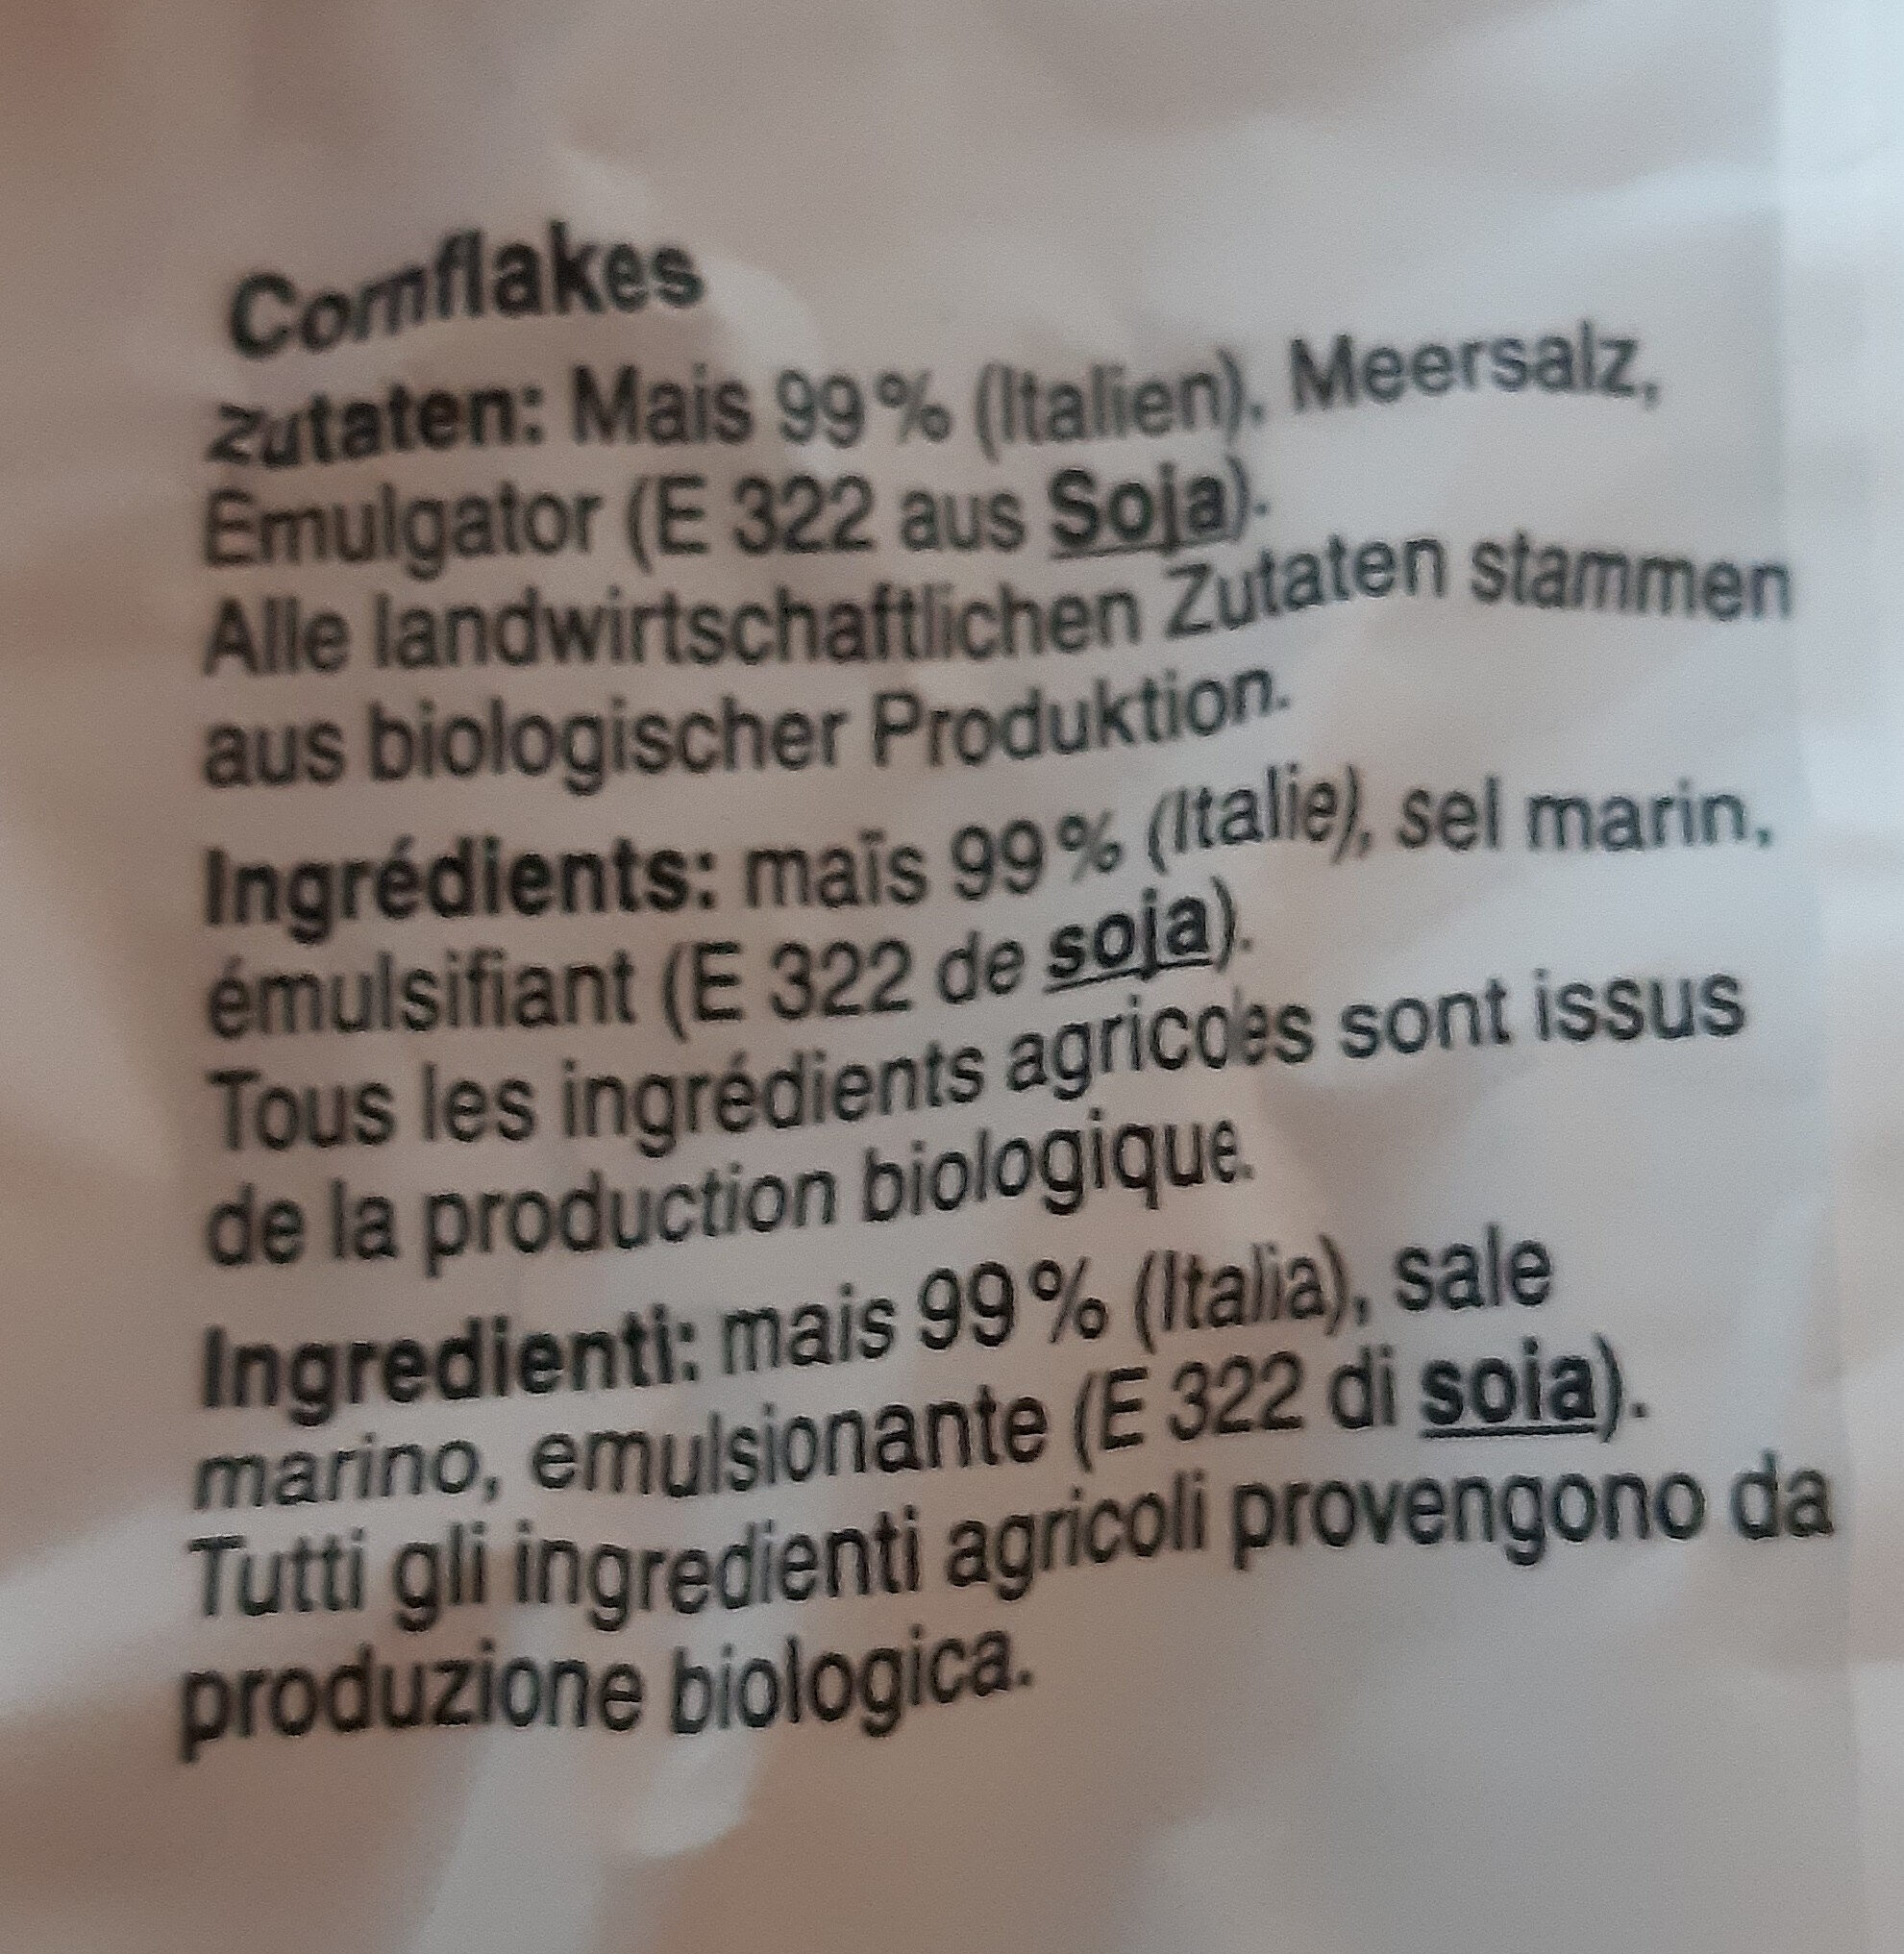 Cornflakes - Ingredients